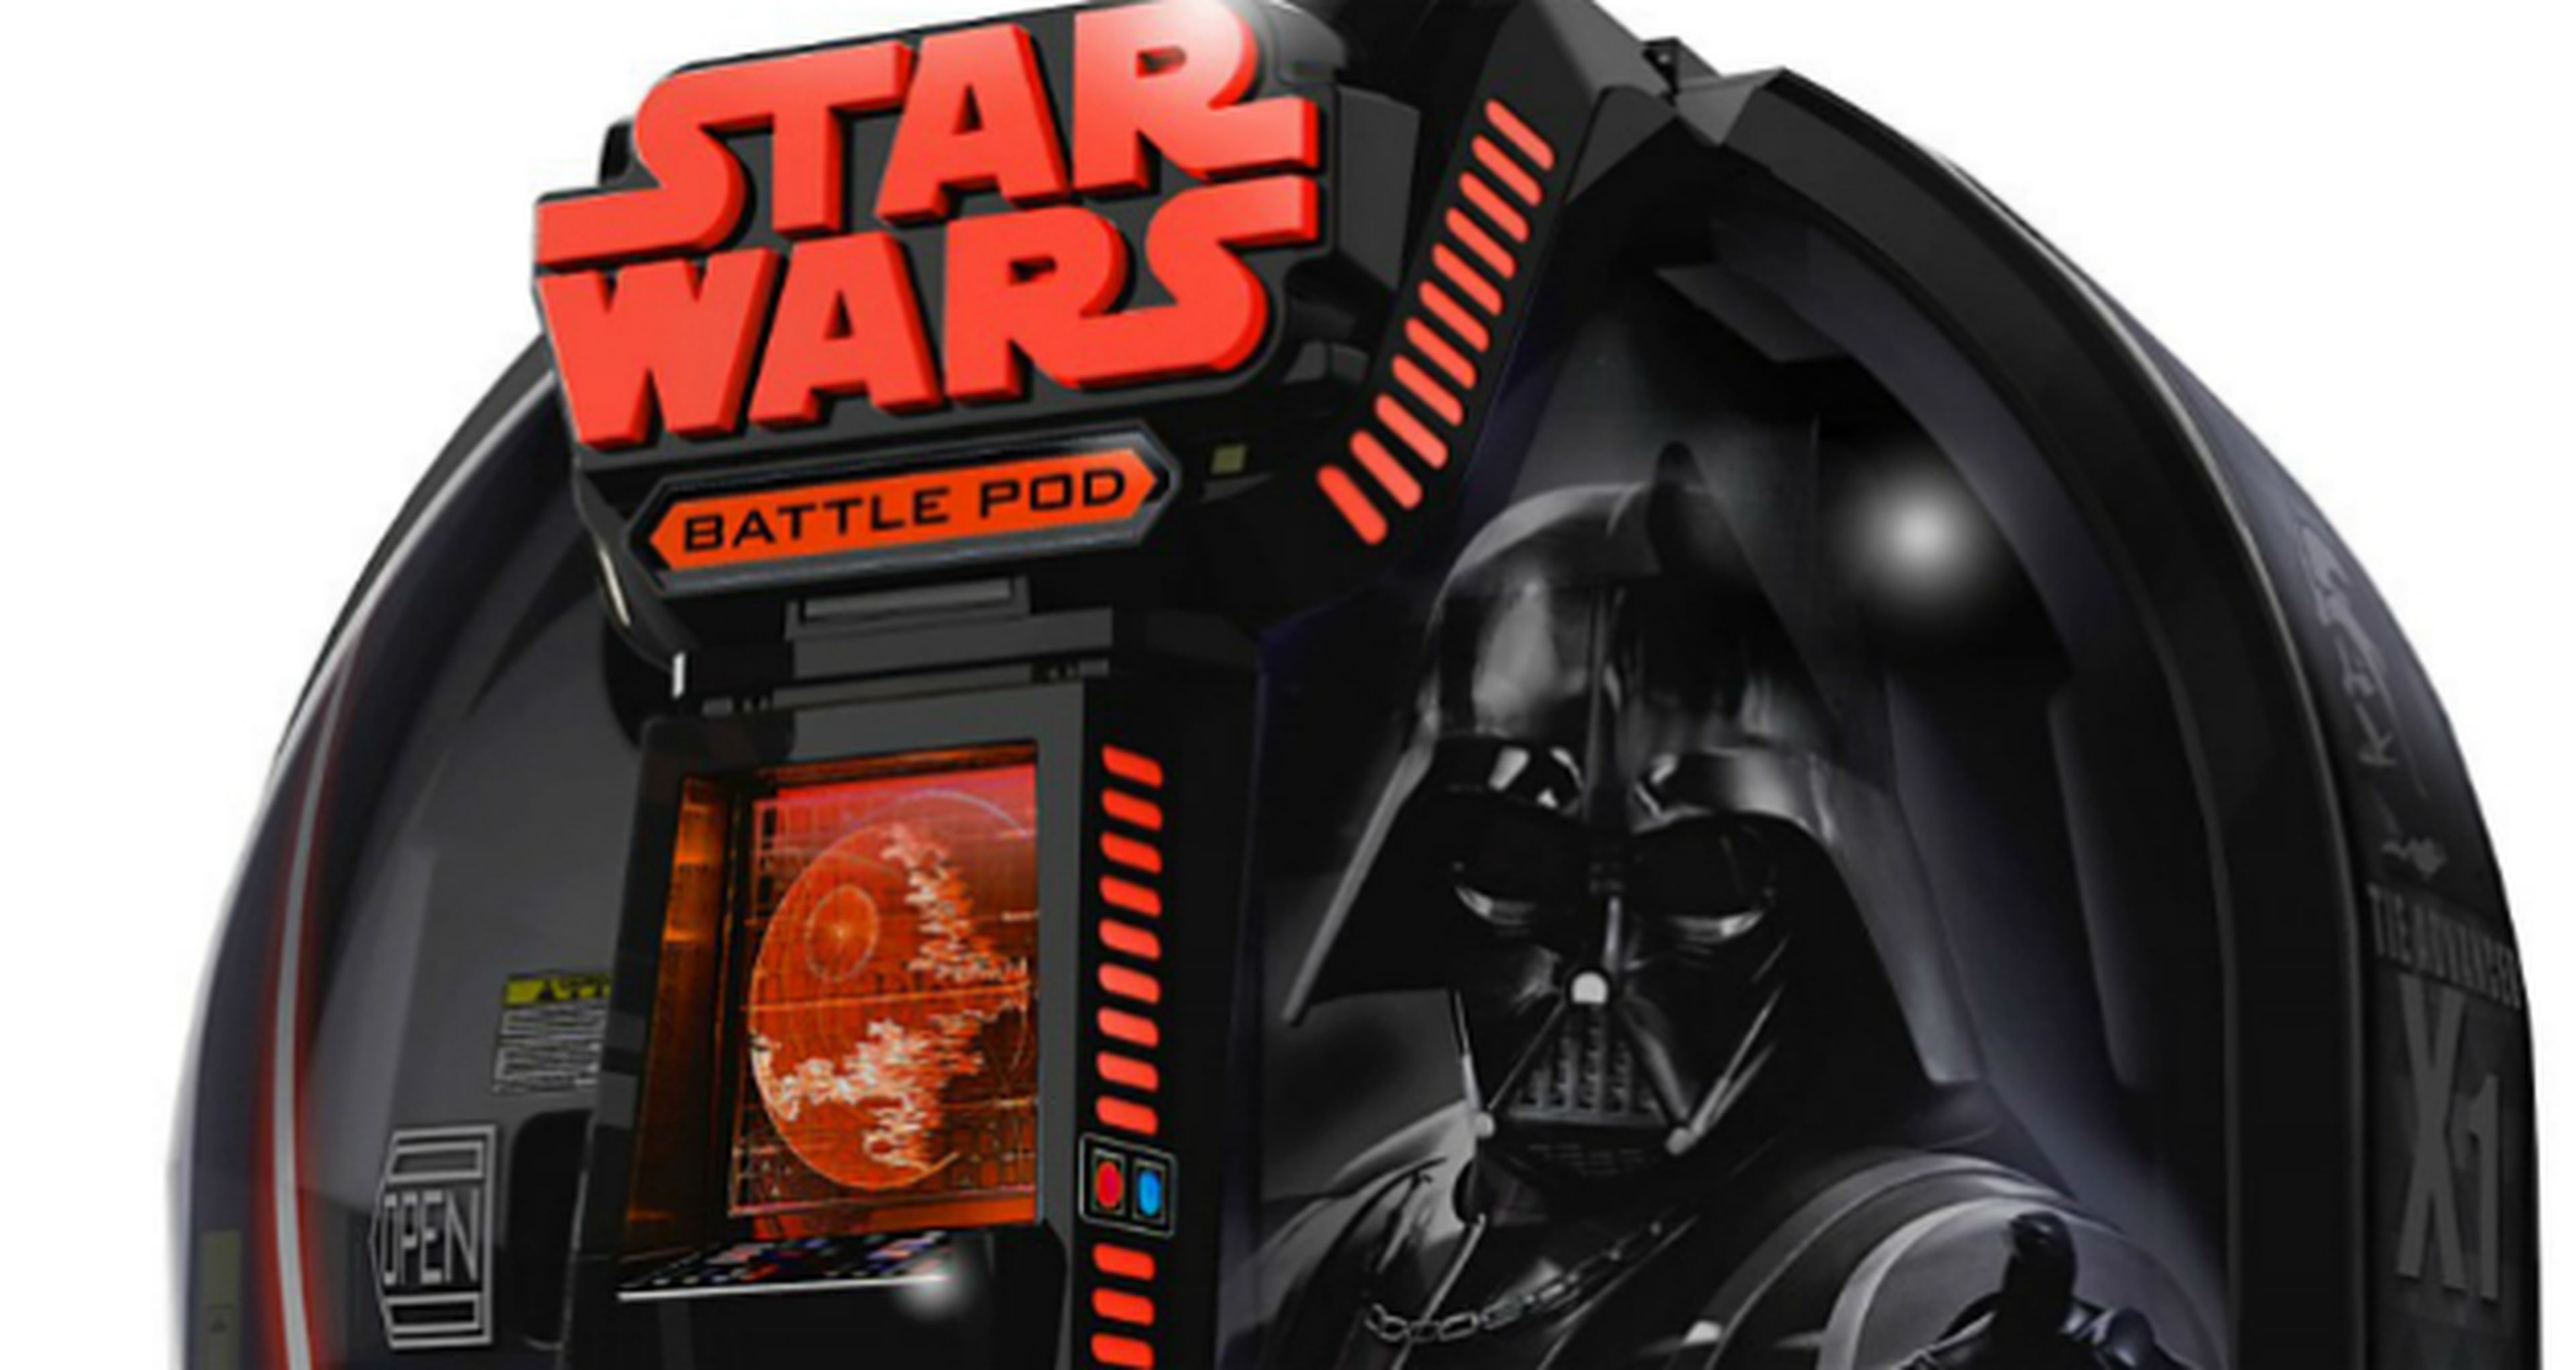 Star Wars Battle Pod se pondrá a la venta gracias a Bandai Namco